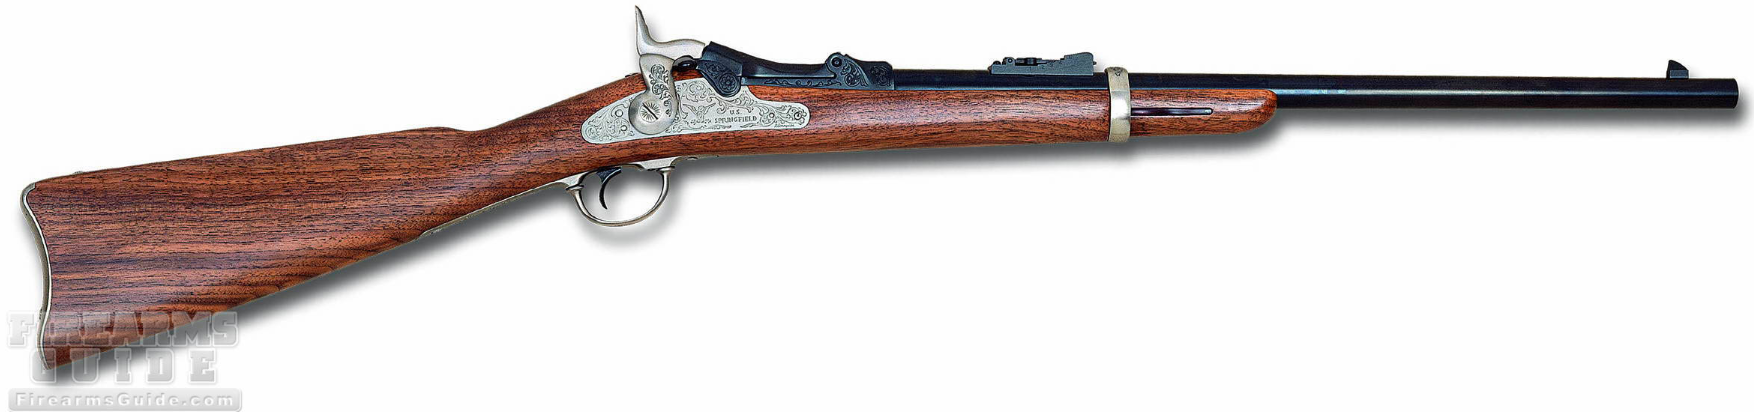 Pedersoli Springfield Trapdoor Rifle DeLuxe